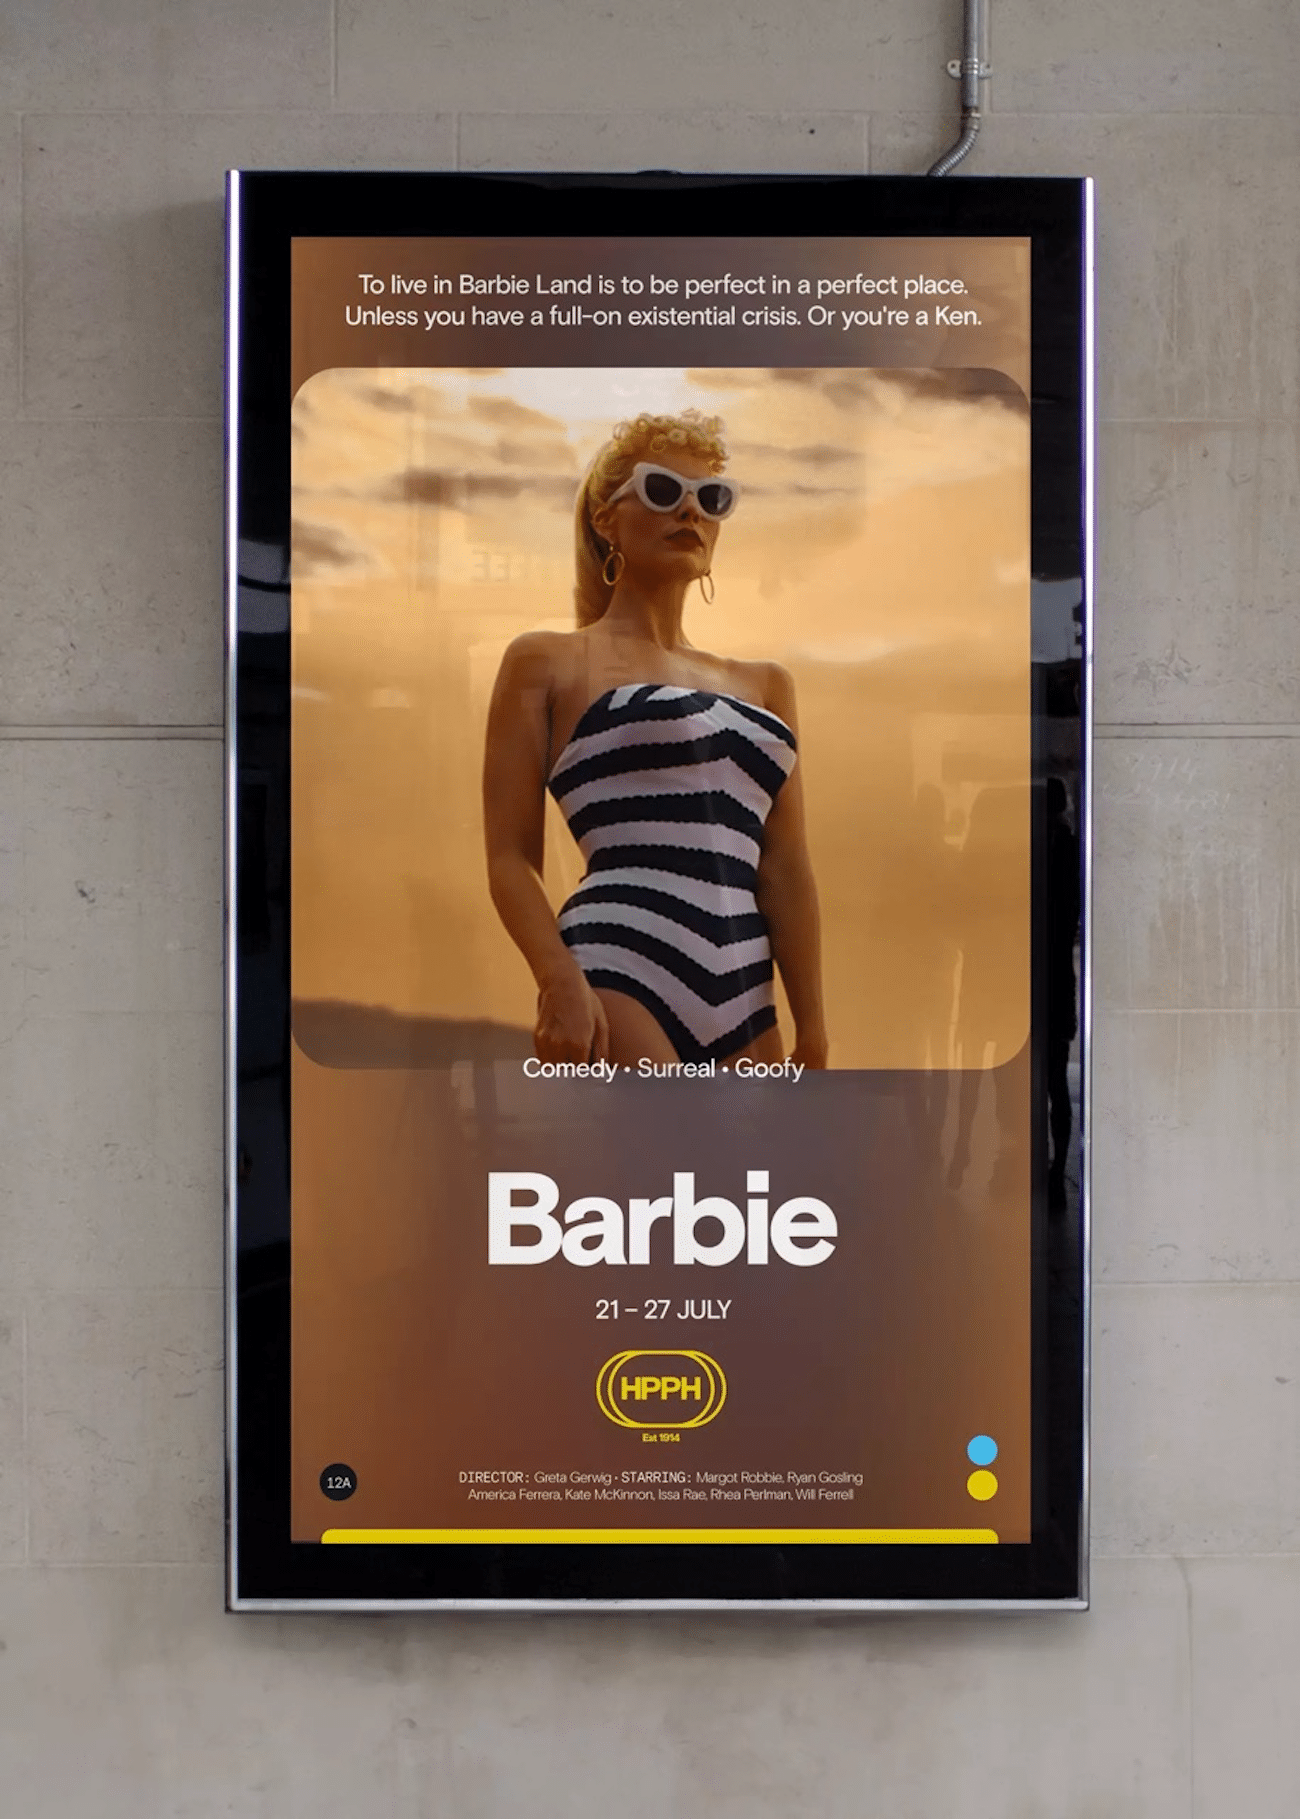 Hyde Park Picture House Identity-Umsetzung, Posterdesign zu Barbie auf Digital Screen im Kino